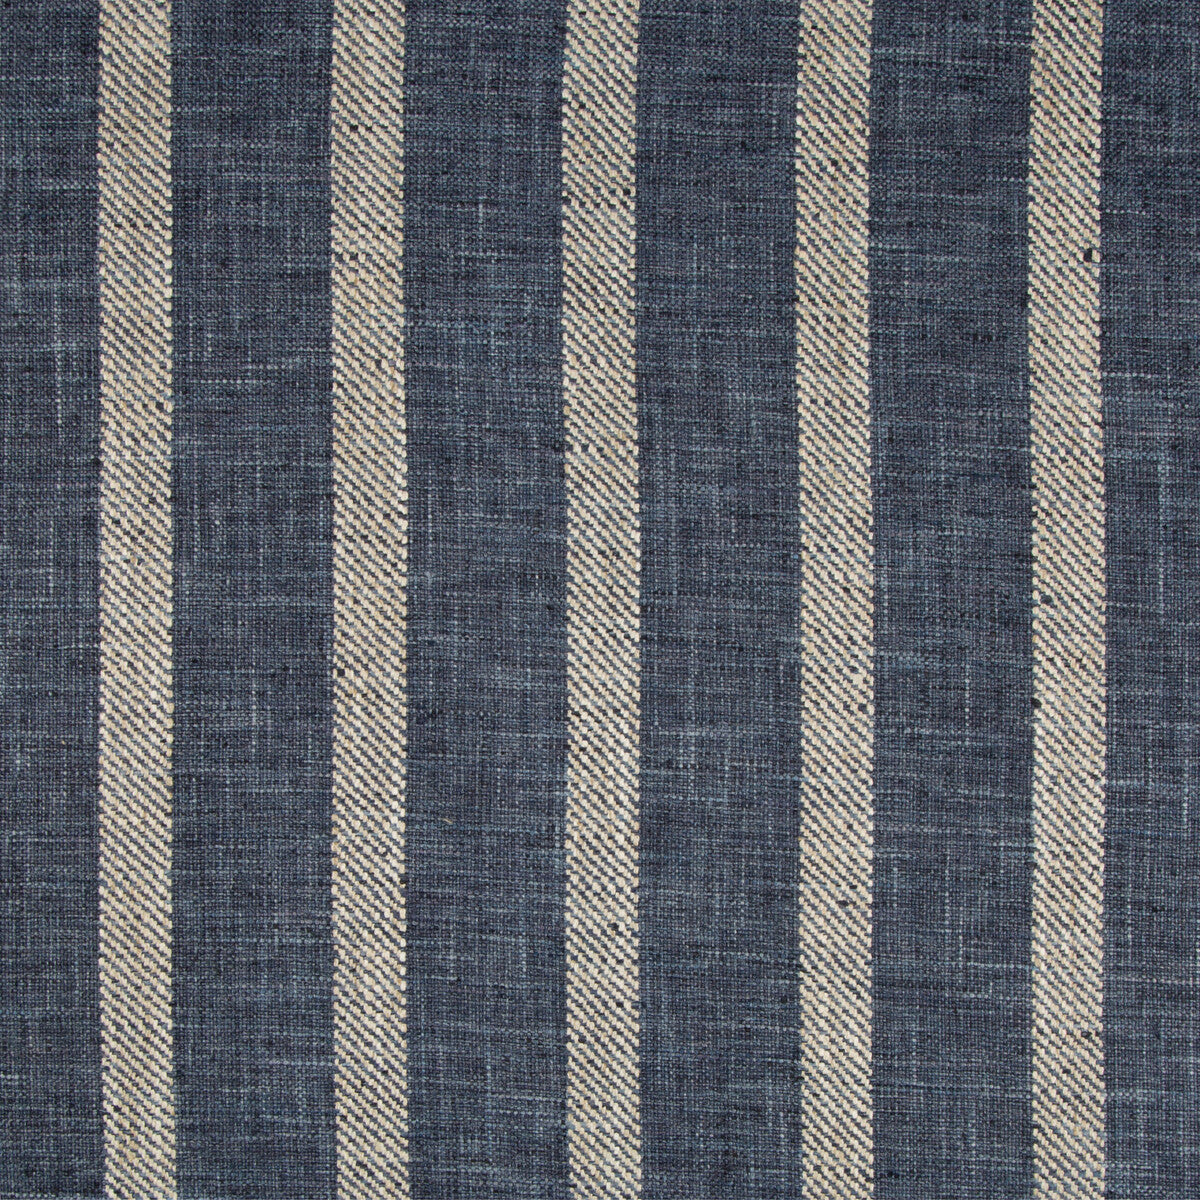 Kravet Basics fabric in 34985-50 color - pattern 34985.50.0 - by Kravet Basics